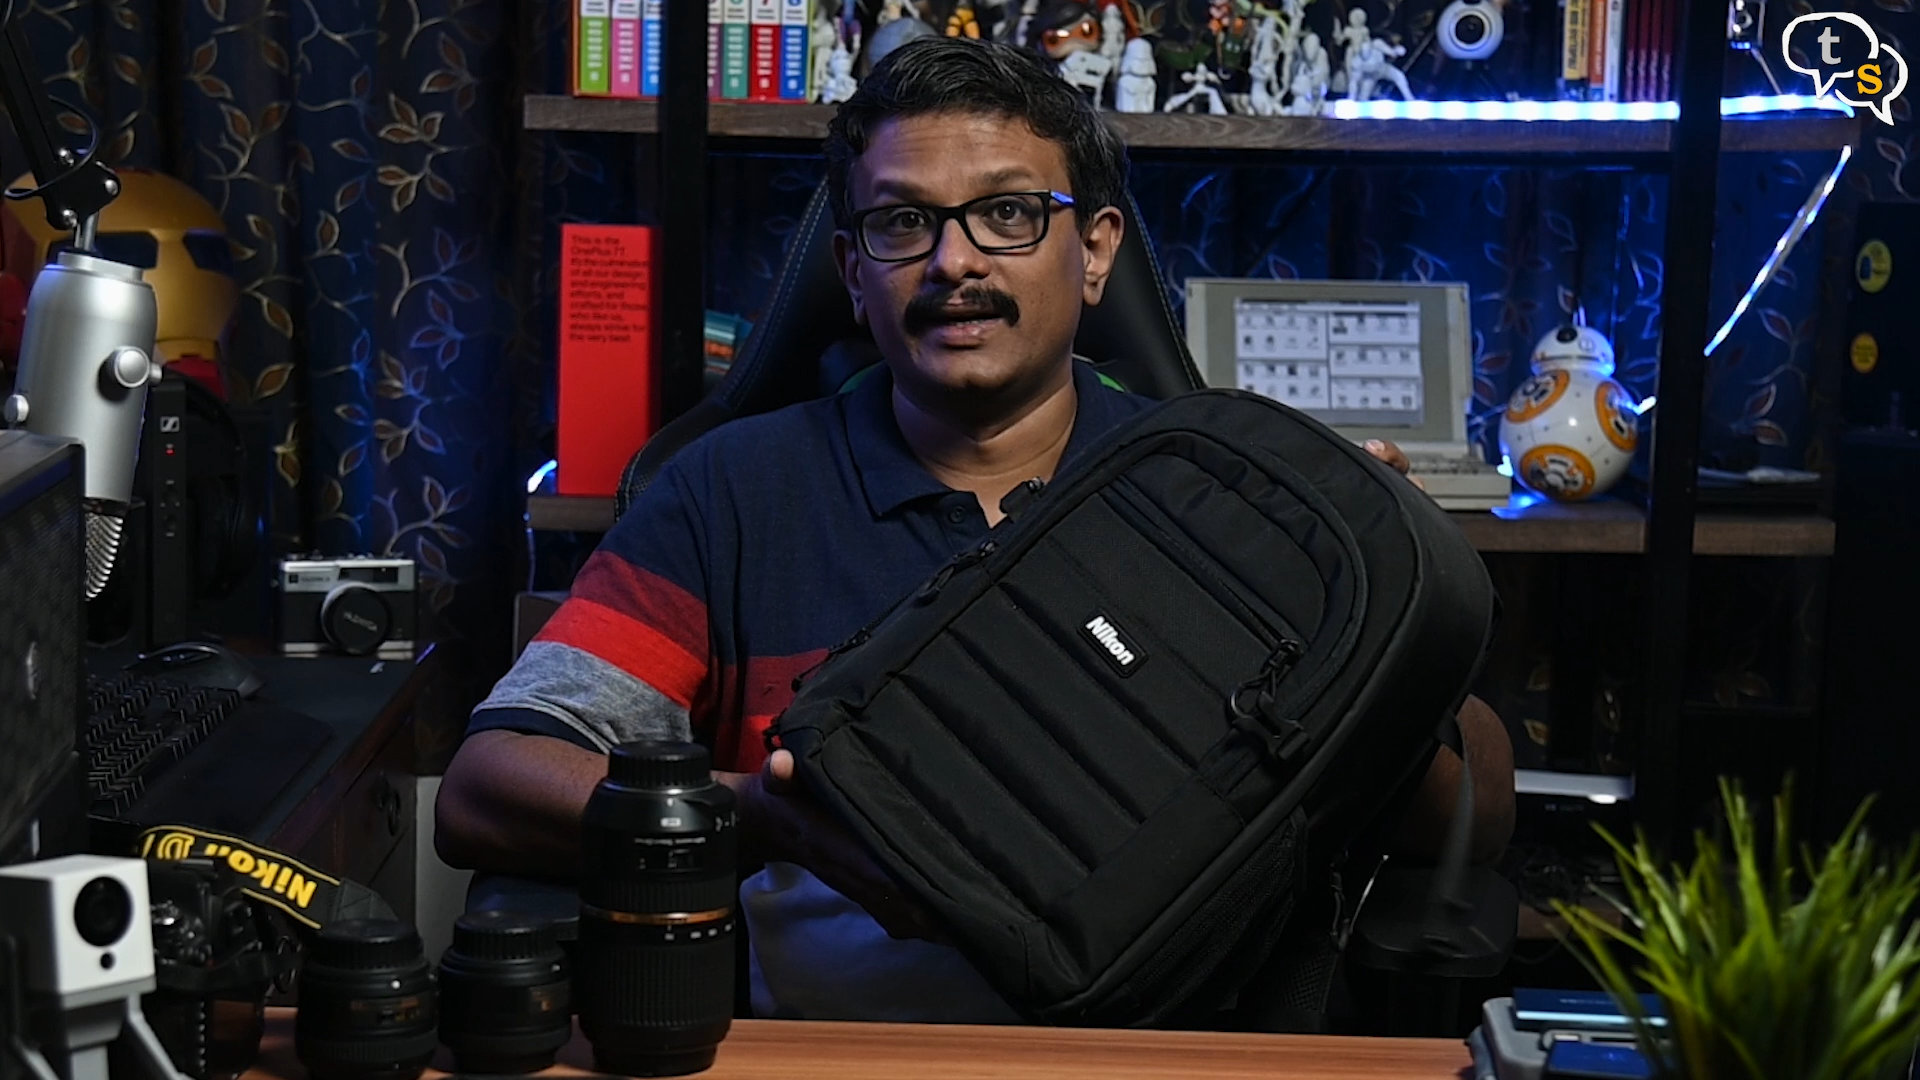 Nikon Camera backpack